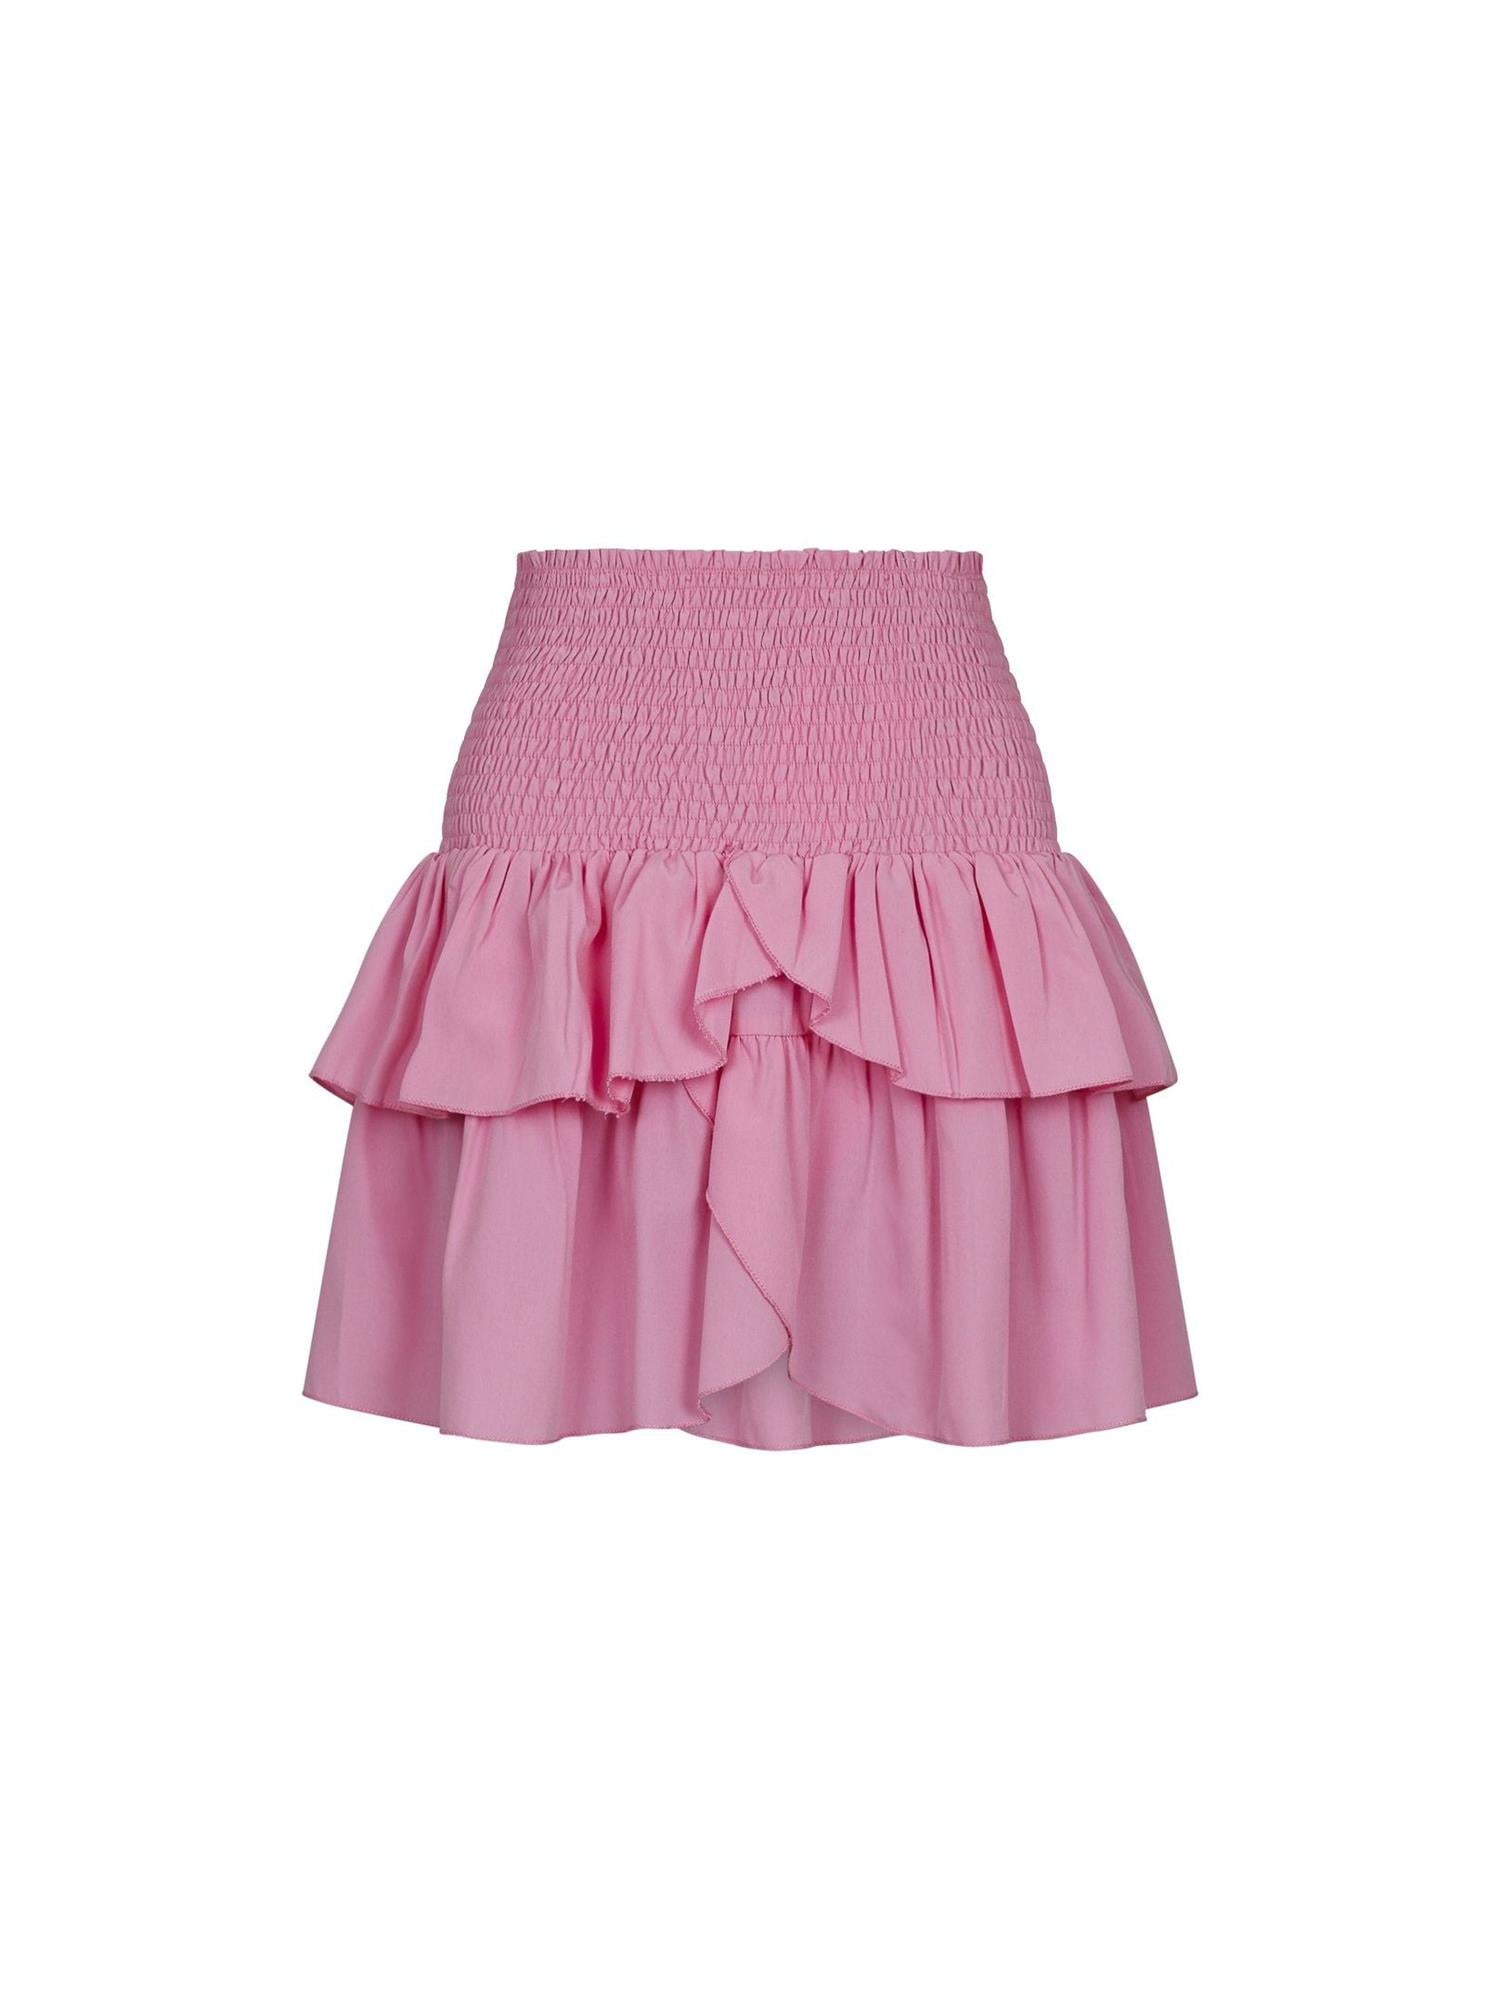 NEO NOIR Carin skirt Pink Rosa